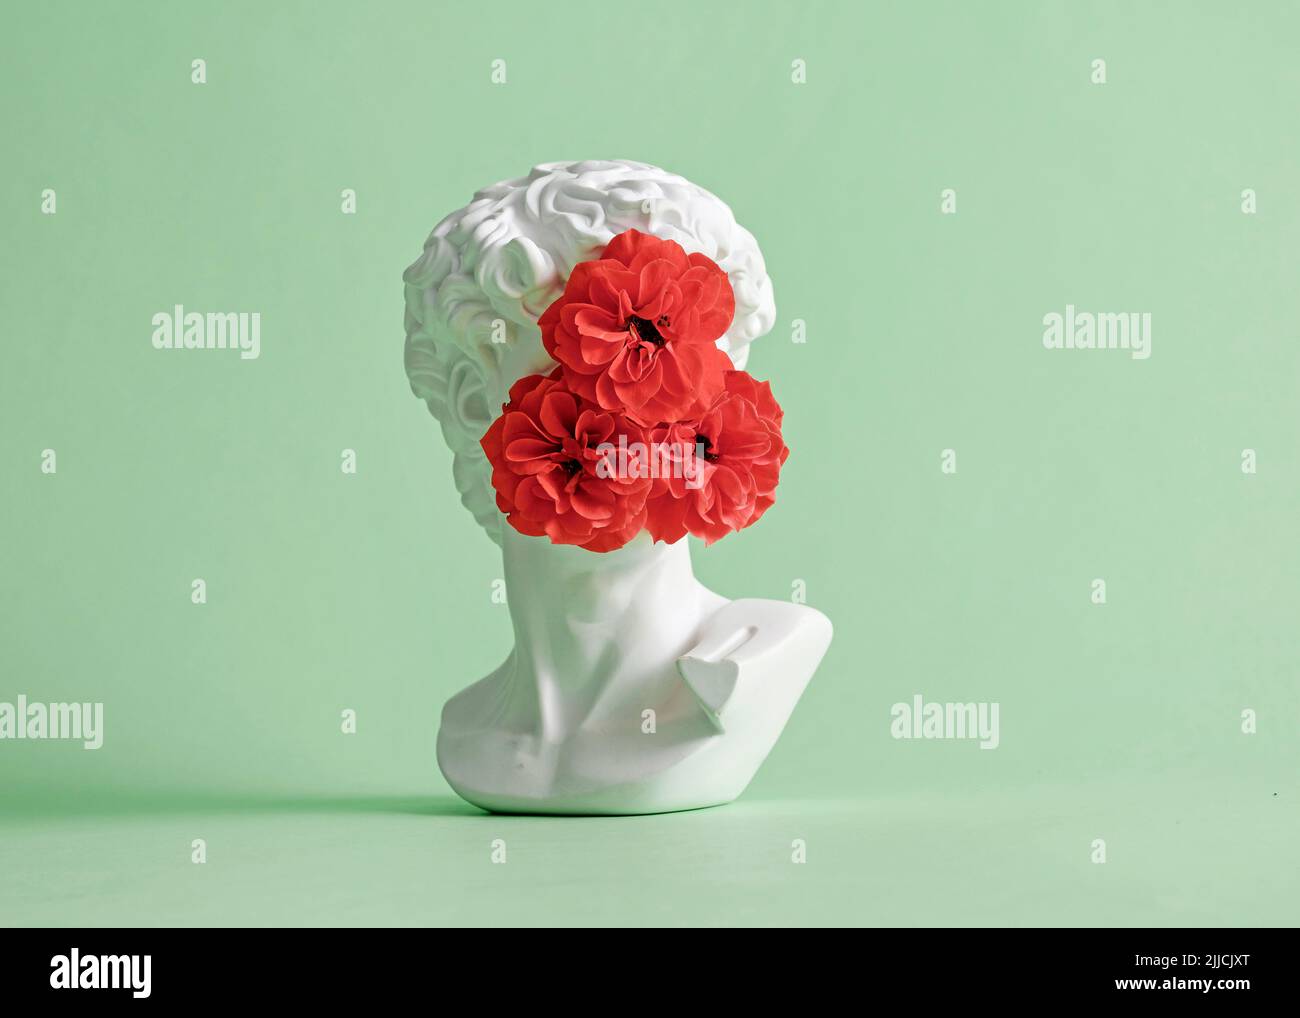 Sculpture de la tête de David de Michel-Ange avec fleur de rose à visage fermé. Concept minimaliste de pastel créatif incognito et furtif. Banque D'Images